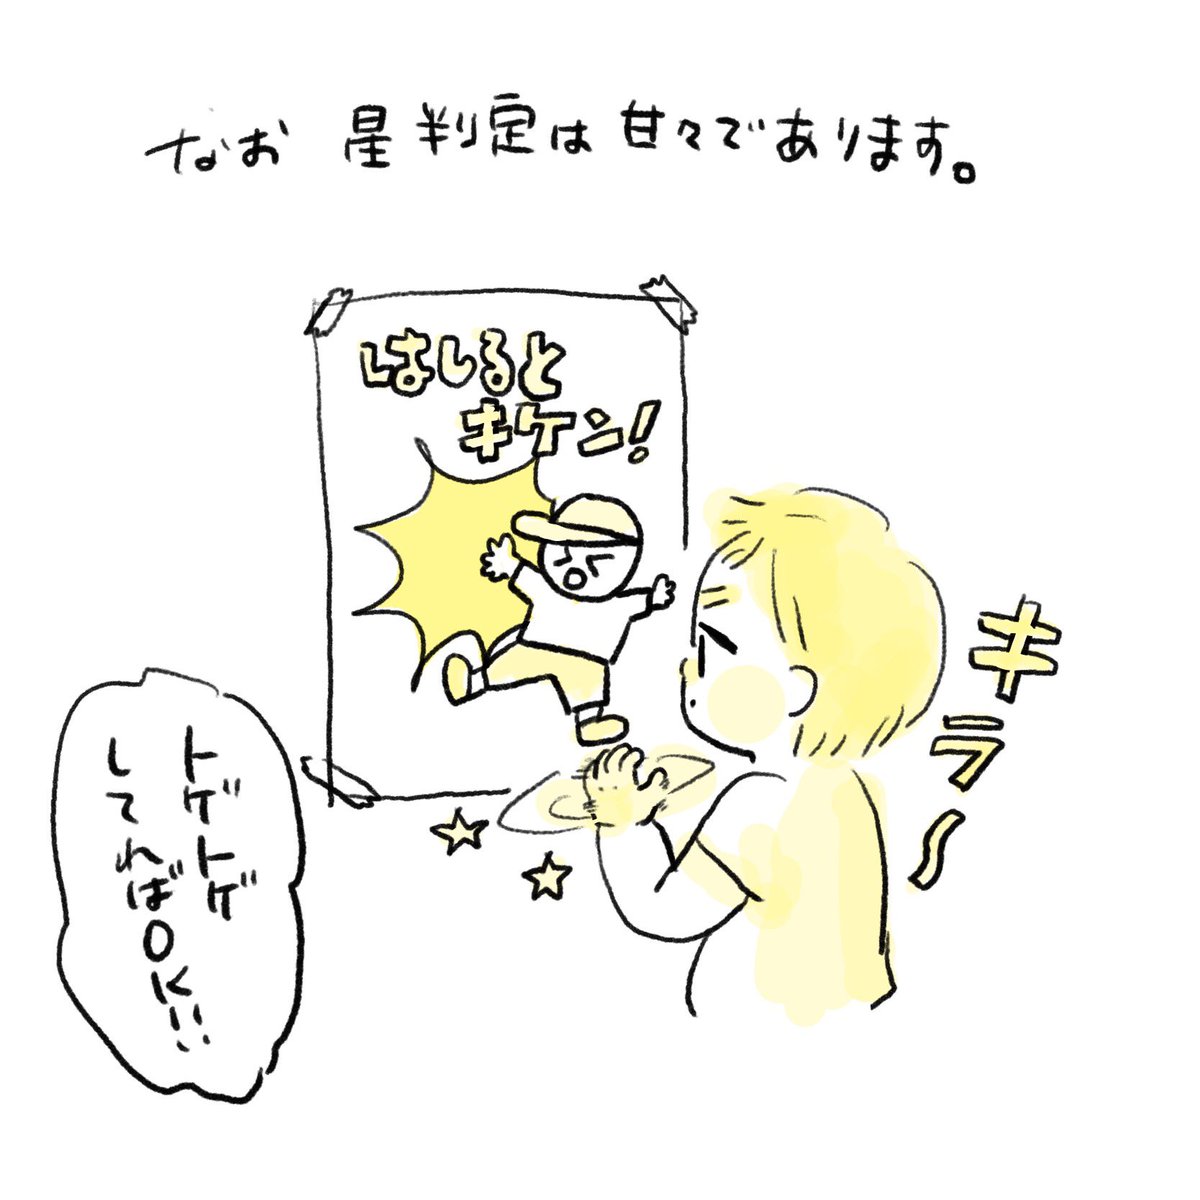 🌟お星様キラキラ〜🌟
#育児絵日記 #育児漫画 